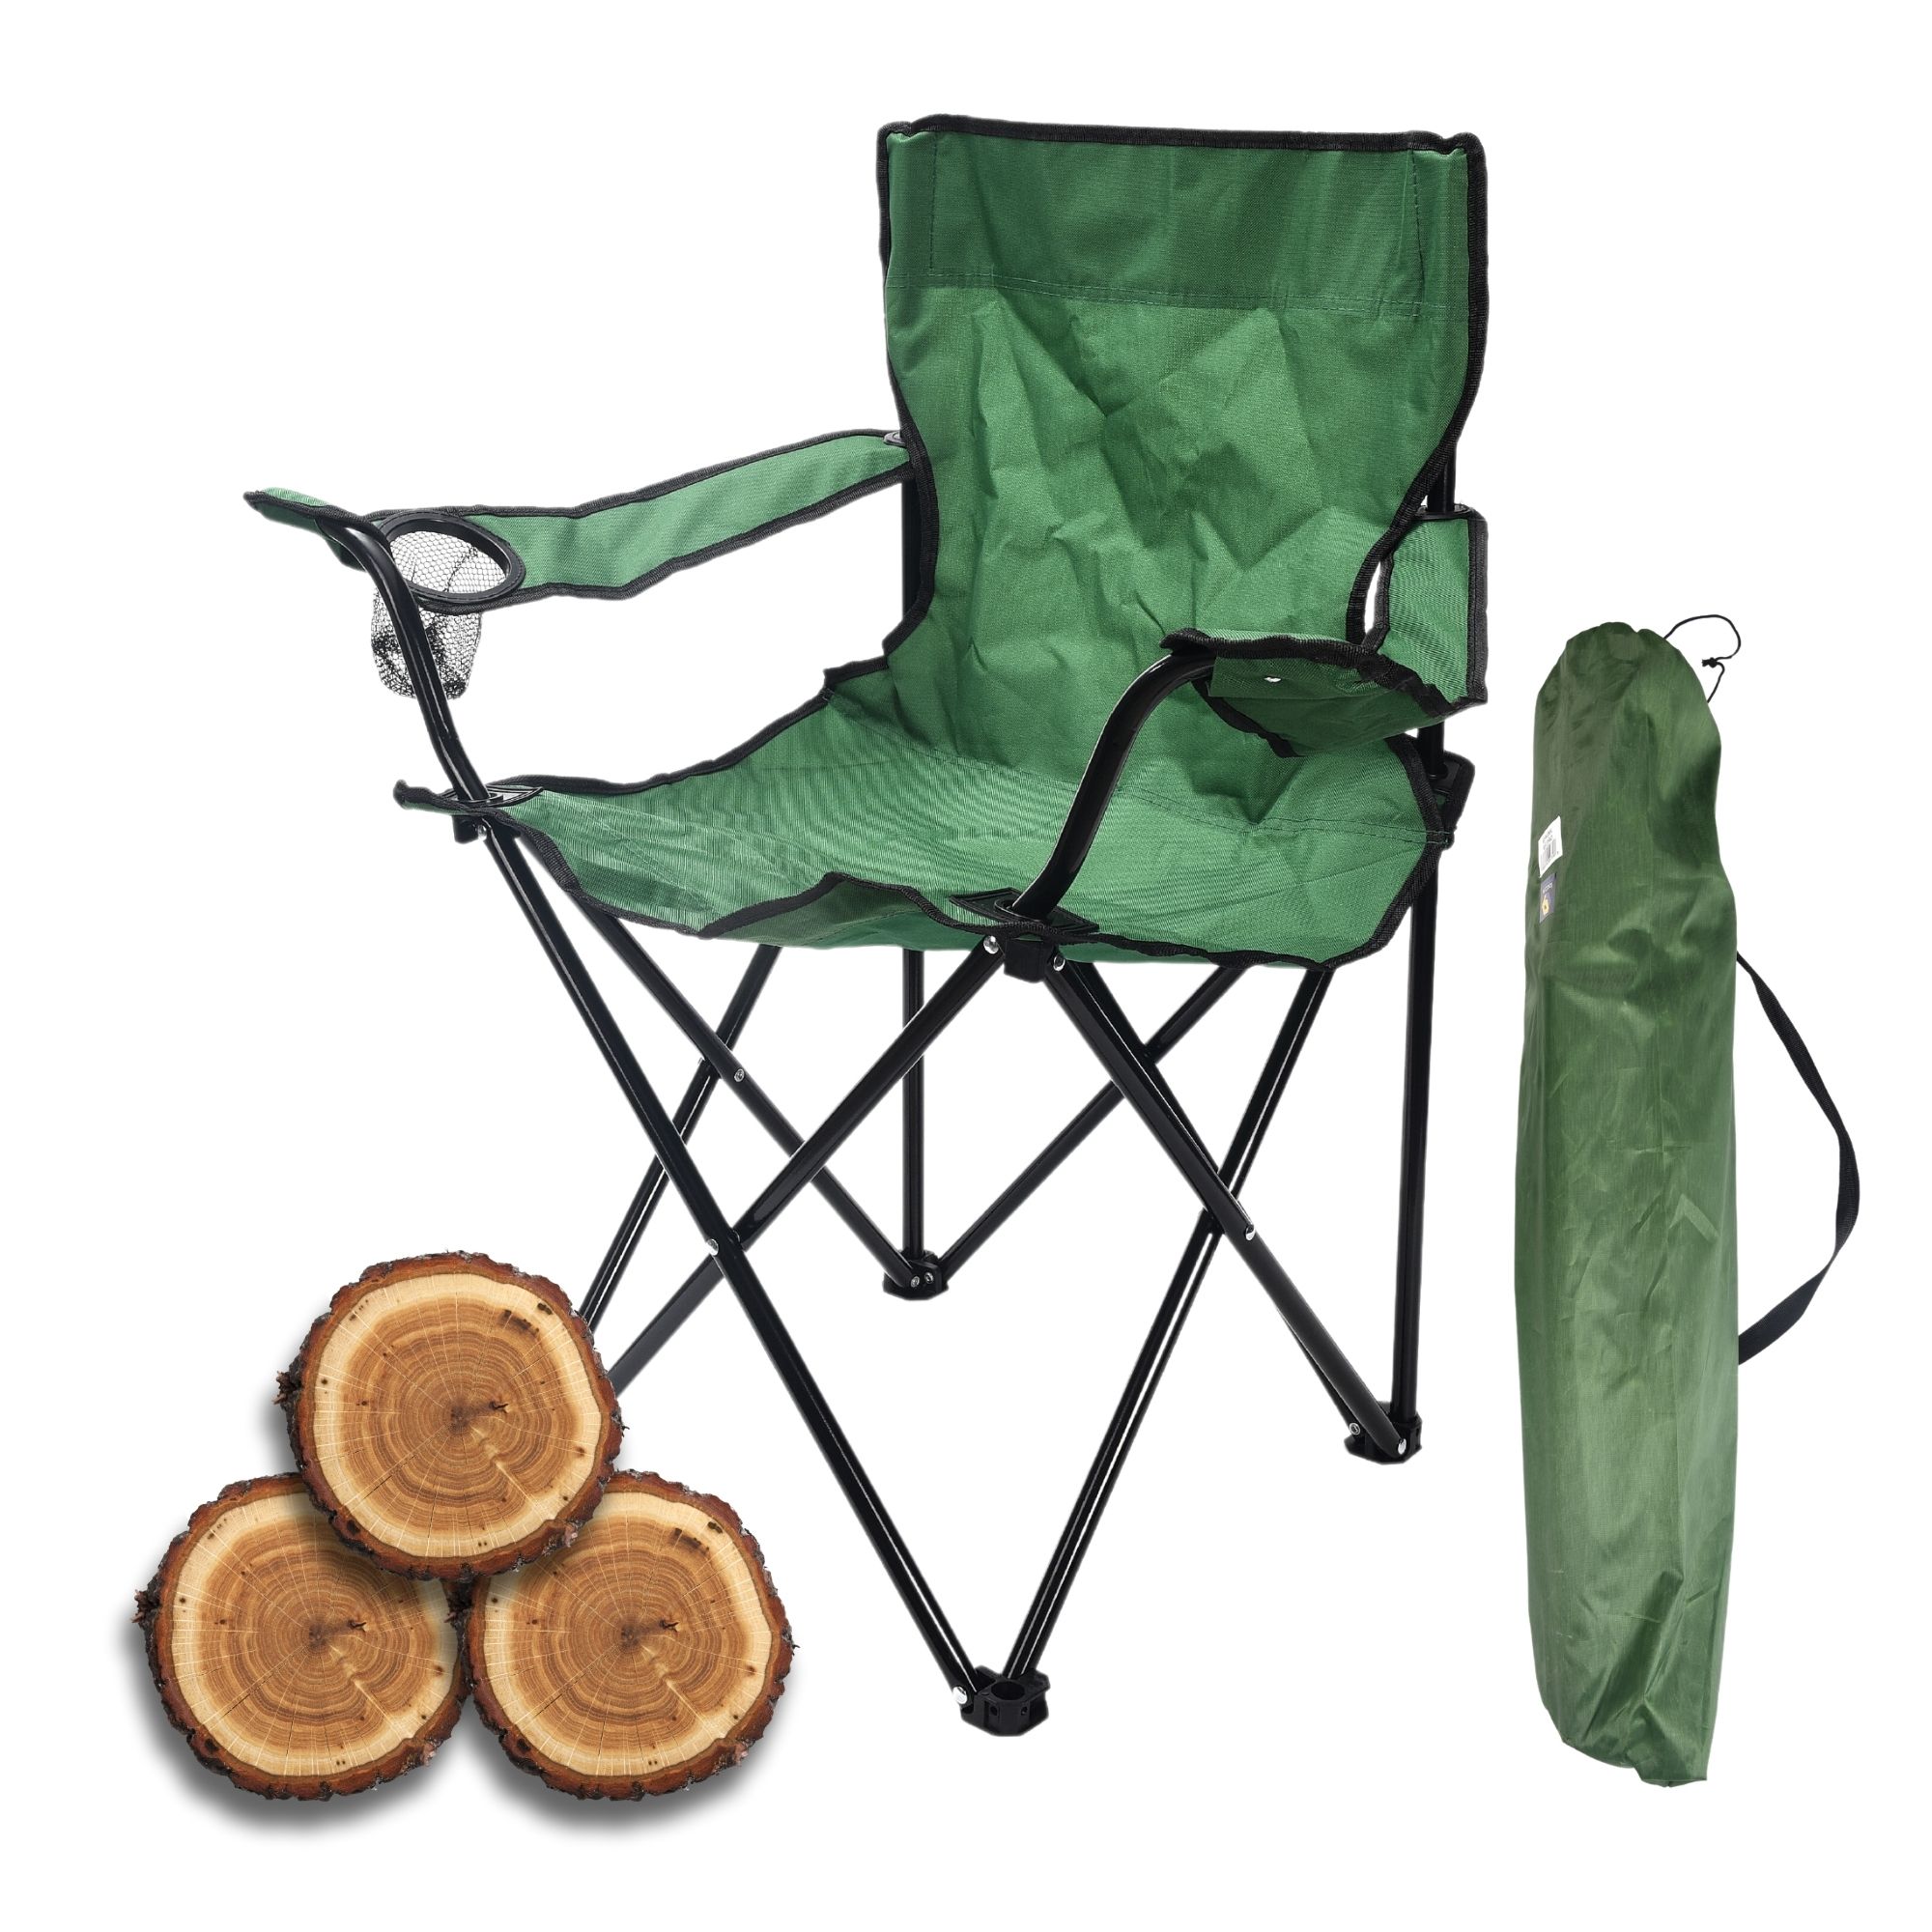 Internet's Best Silla plegable acolchada para acampar - Exterior - Verde -  Deportes - Portavasos - Cómoda - Bolsa de transporte - Playa - Quad